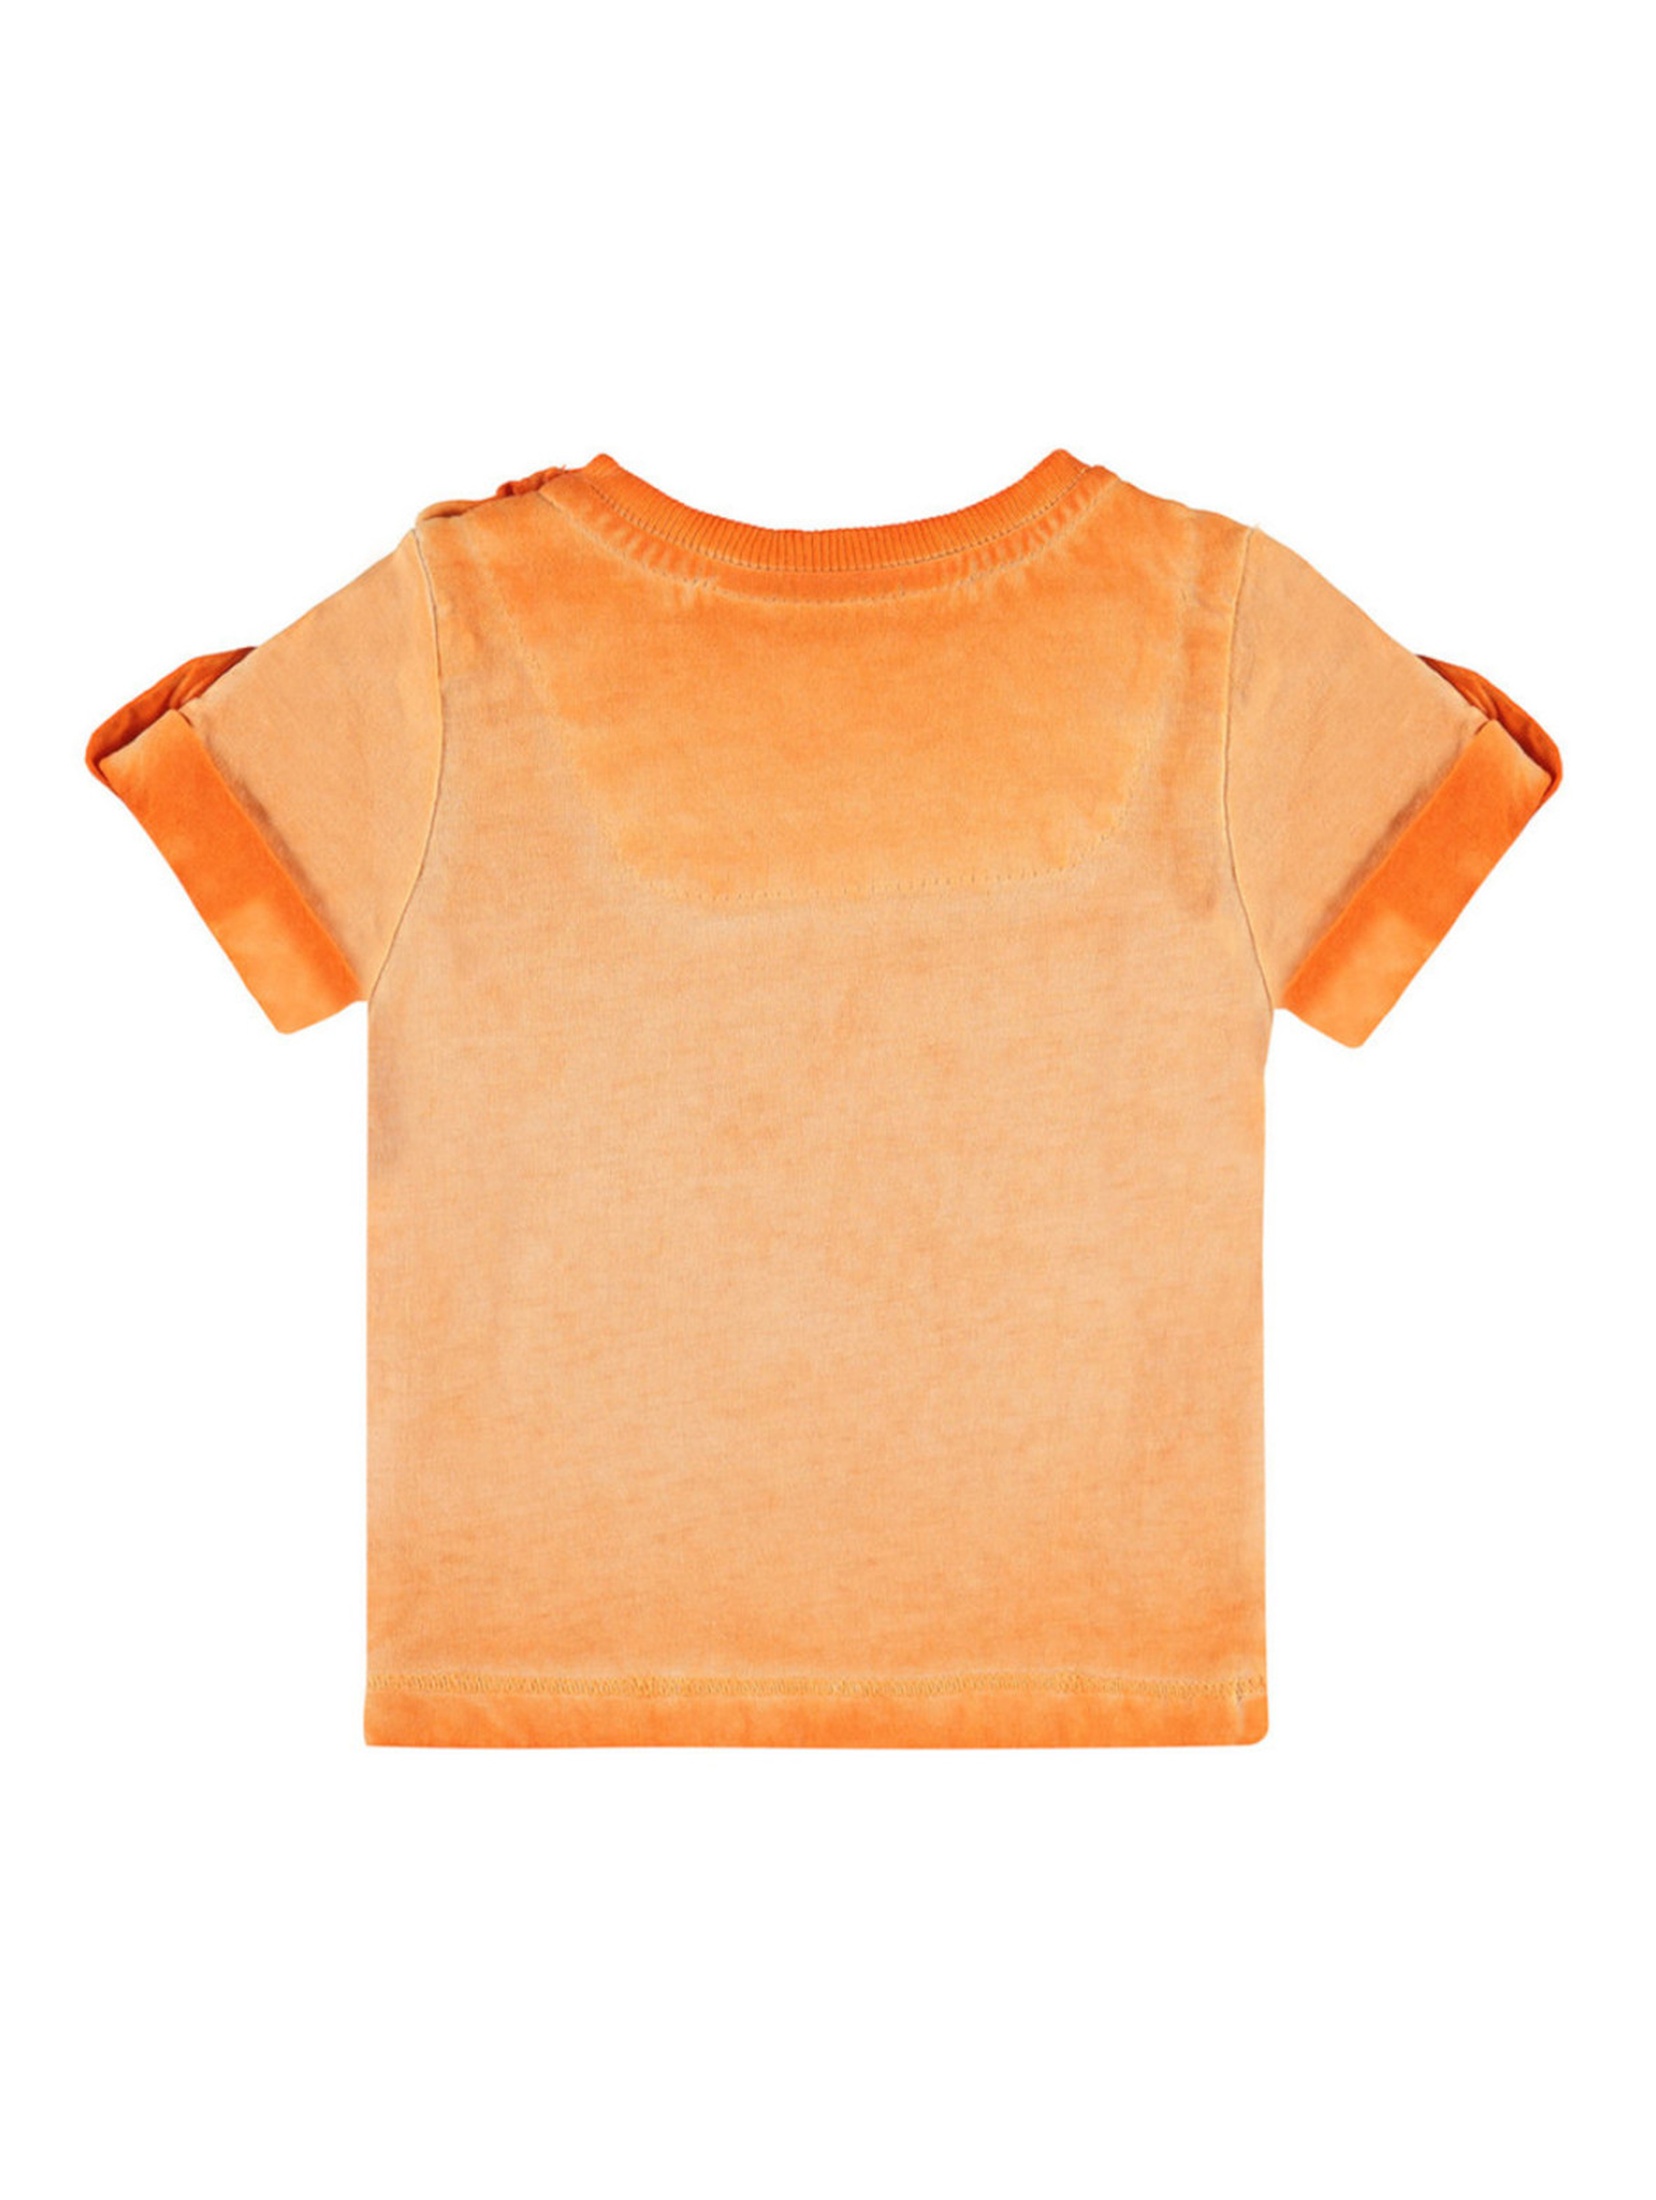 Chłopięca niemowlęca bluzka z krótkim rękawem pomarańczowa